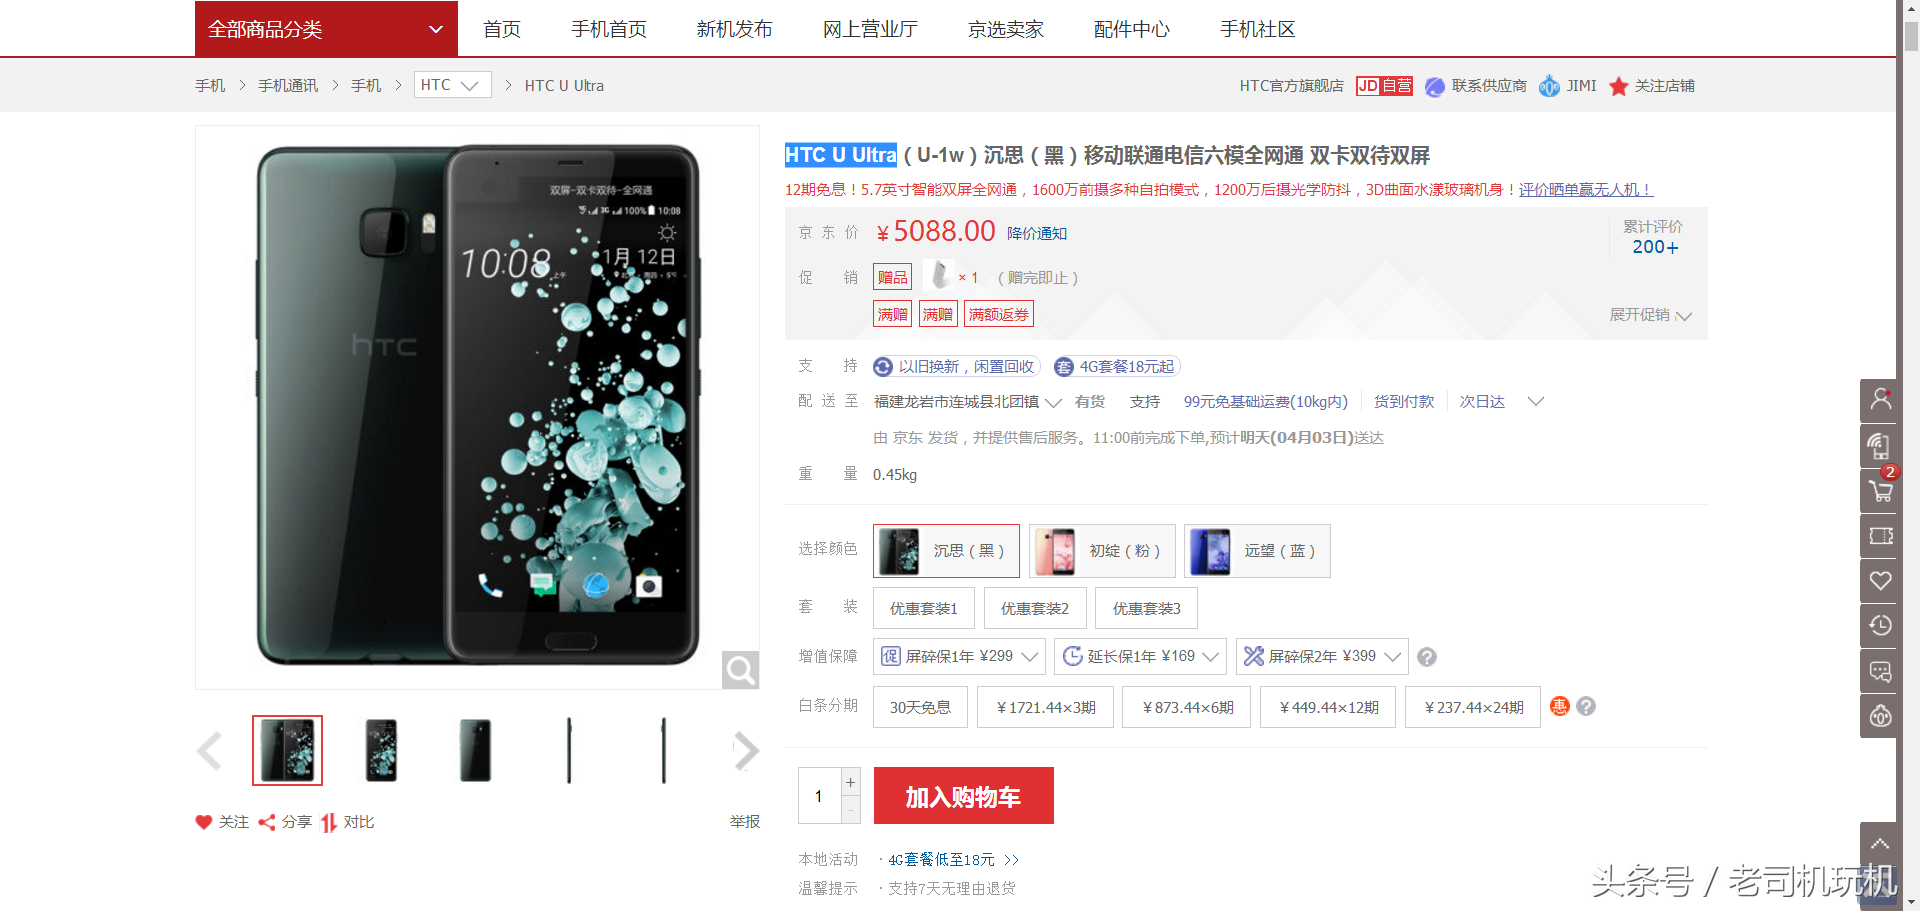 特惠五百元仍难显性价比高的旗舰手机HTC U Ultra